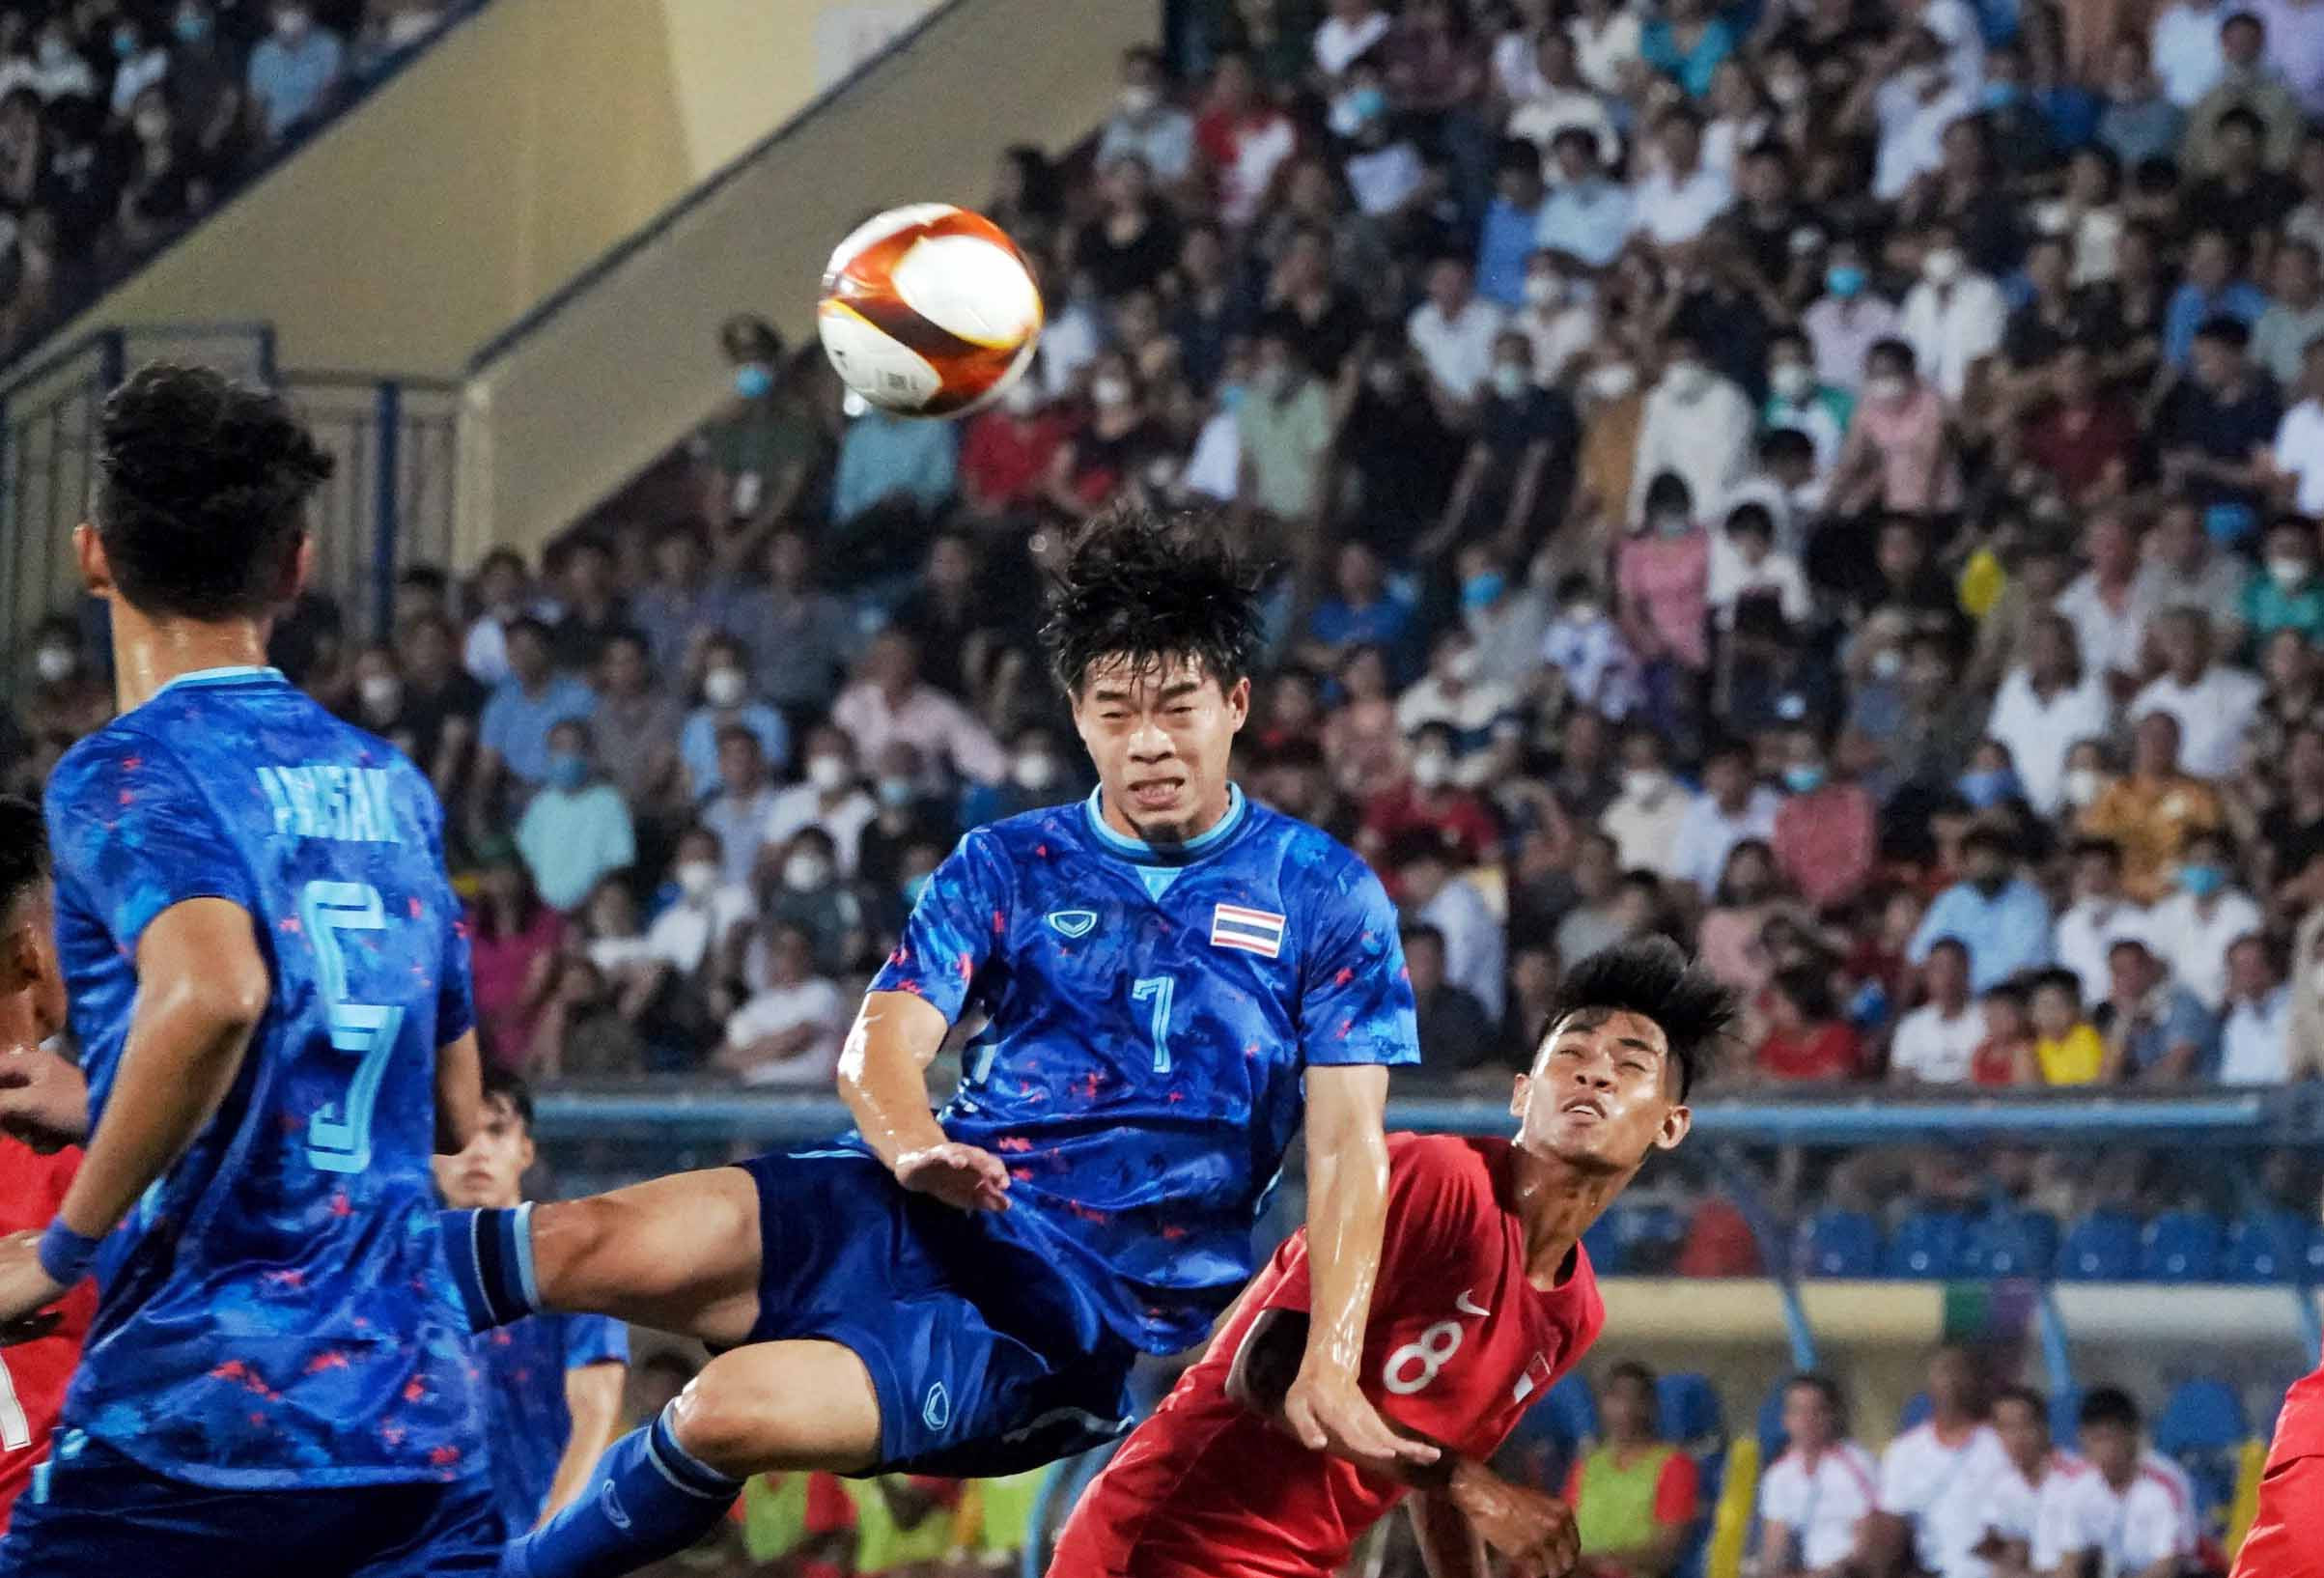 Tuy nhiên, các cầu thủ U23 Thái Lan gặp sự kháng cự khá quyết liệt từ U23 Singapore cũng đang cần chiến thắng sau trận hoà 2-2 hú vía trước U23 Lào ở trận ra quân.